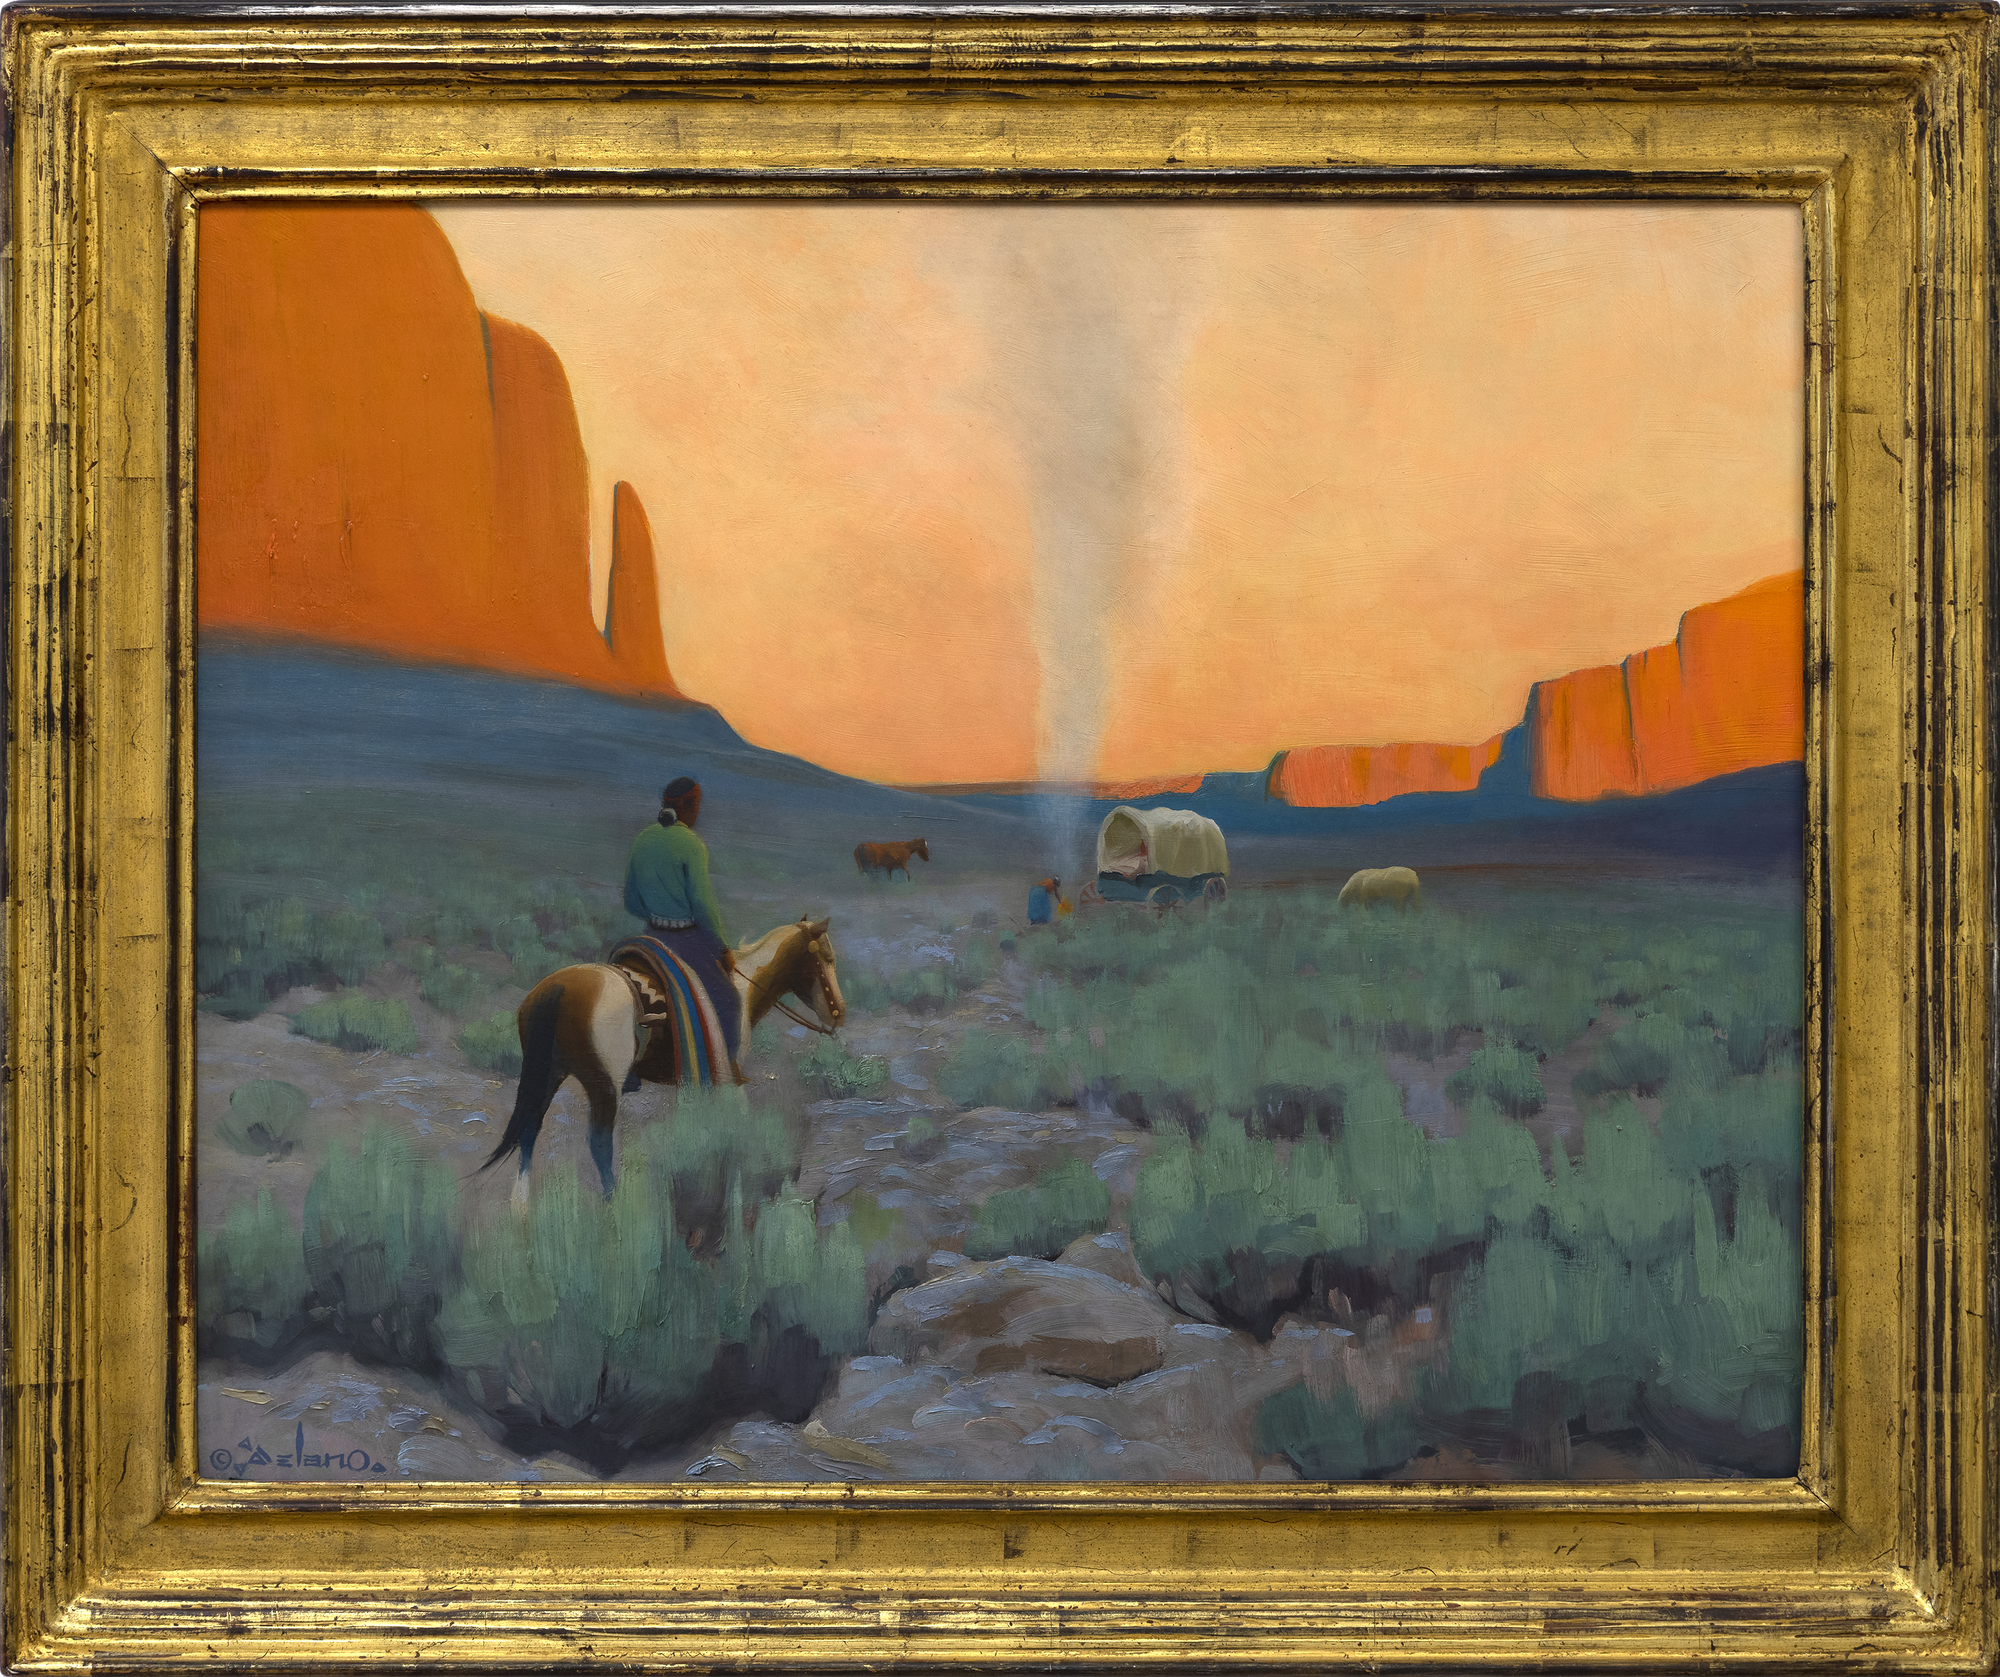 ידוע בסגנון הציור הייחודי שהוא כינה &quot;ריאליזם מעוצב&quot;, הכשרתו של ג&#039;רלד קרטיס דלאנו תחת N. C. Wyeth אפשרה לו להשתמש במגוון גישות המחשה להבעה, תמיד עם עיצוב מוקפד וללא דופי. ציורים כמו Navajo Camp, המוכרים בזכות הצבעים הרכים והמאופסים שלהם, הקומפוזיציות המסודרות והחינניות שלהם, ופשטות הצורה, ומעדנים כל נושא לטבעו המהותי, מציגים לראווה את עינו החדה של דלאנו, הבנתו ויכולתו ללכוד את הצבע והאצילות של אורח החיים של הנאוואחו. כמו ברוב עבודותיו, השמיים תופסים חלק ניכר מהבד עם דמויות המעניקות קנה מידה לסצנה. אלמנטים אלה פועלים יחד כדי ליצור תחושה של מרחבים ושלווה.